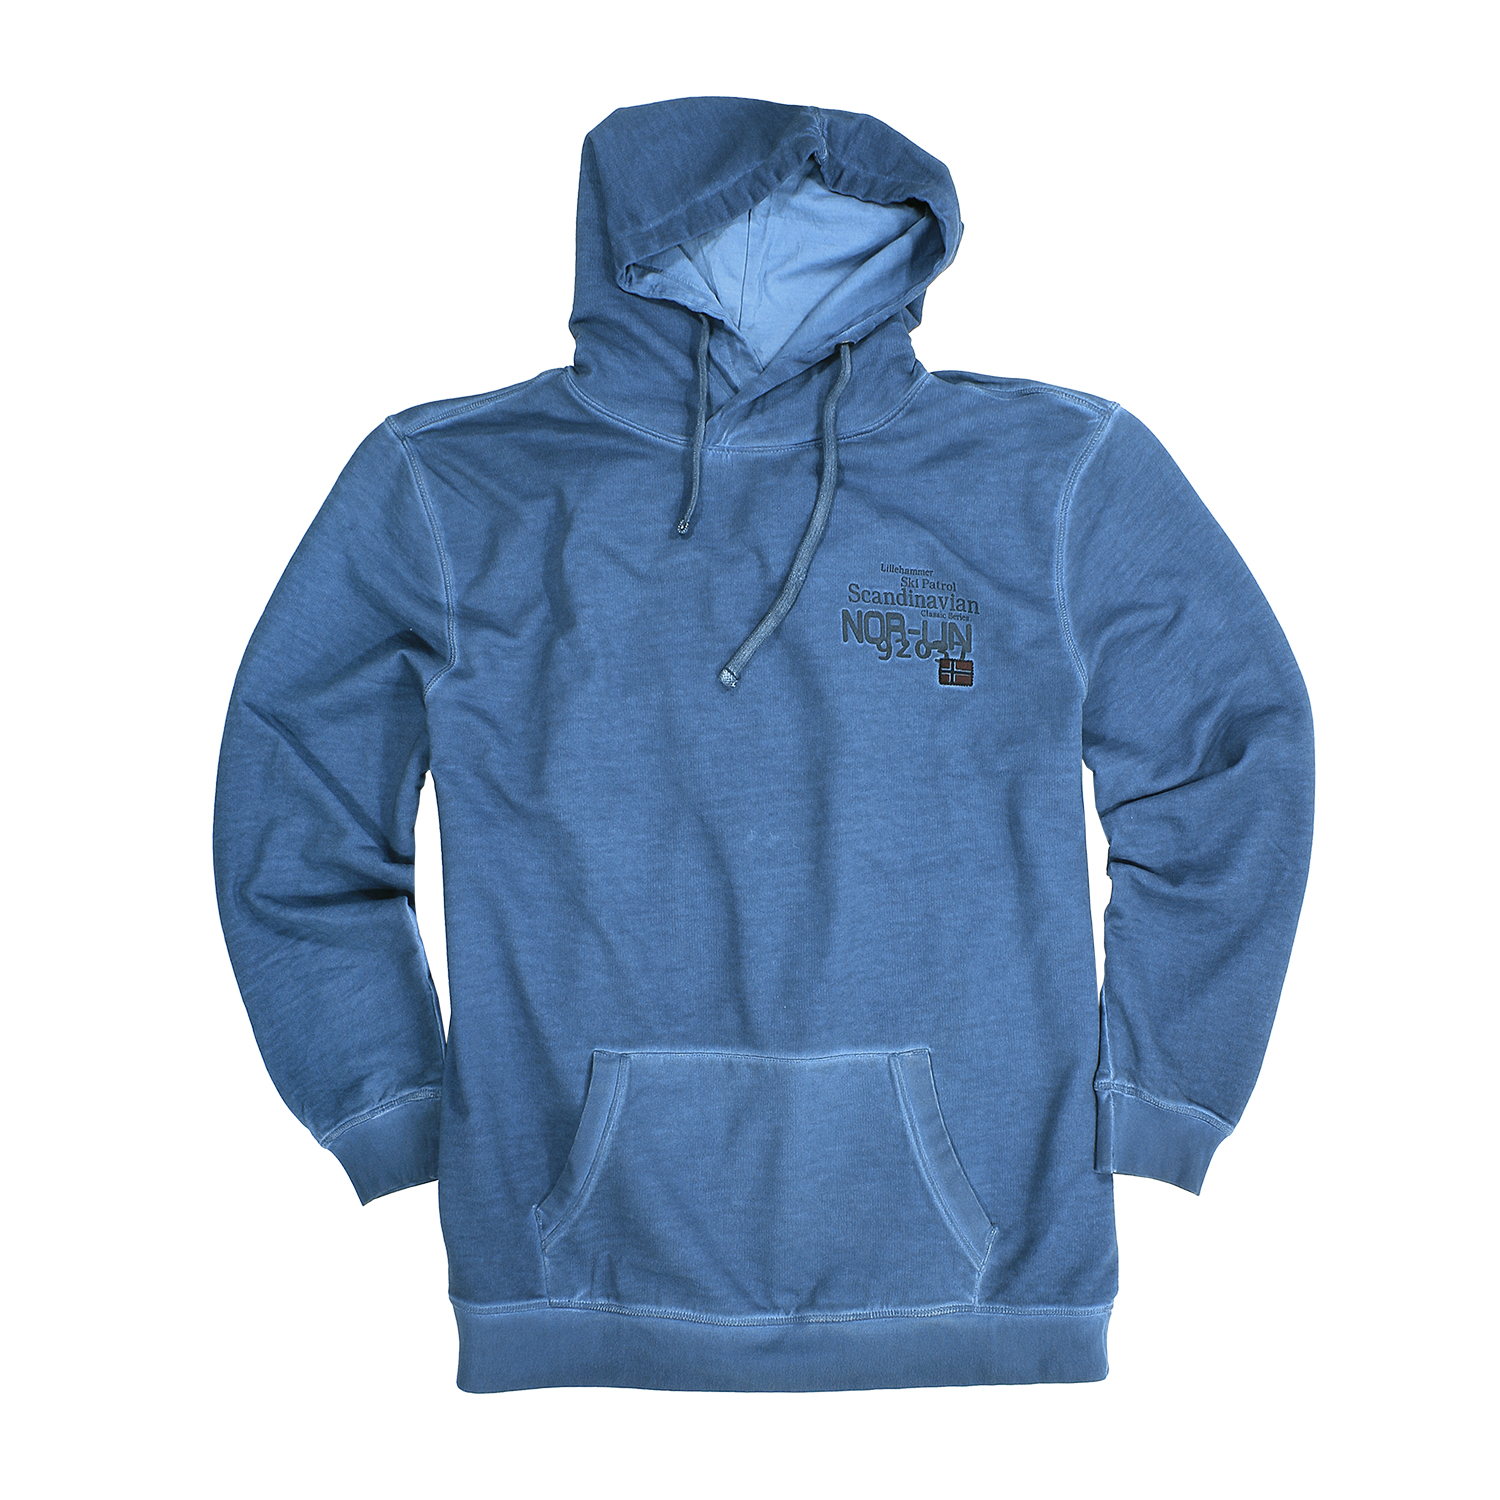 Übergrößen Kapuzen-Sweatshirt by Kitaro in night blue bis 8XL